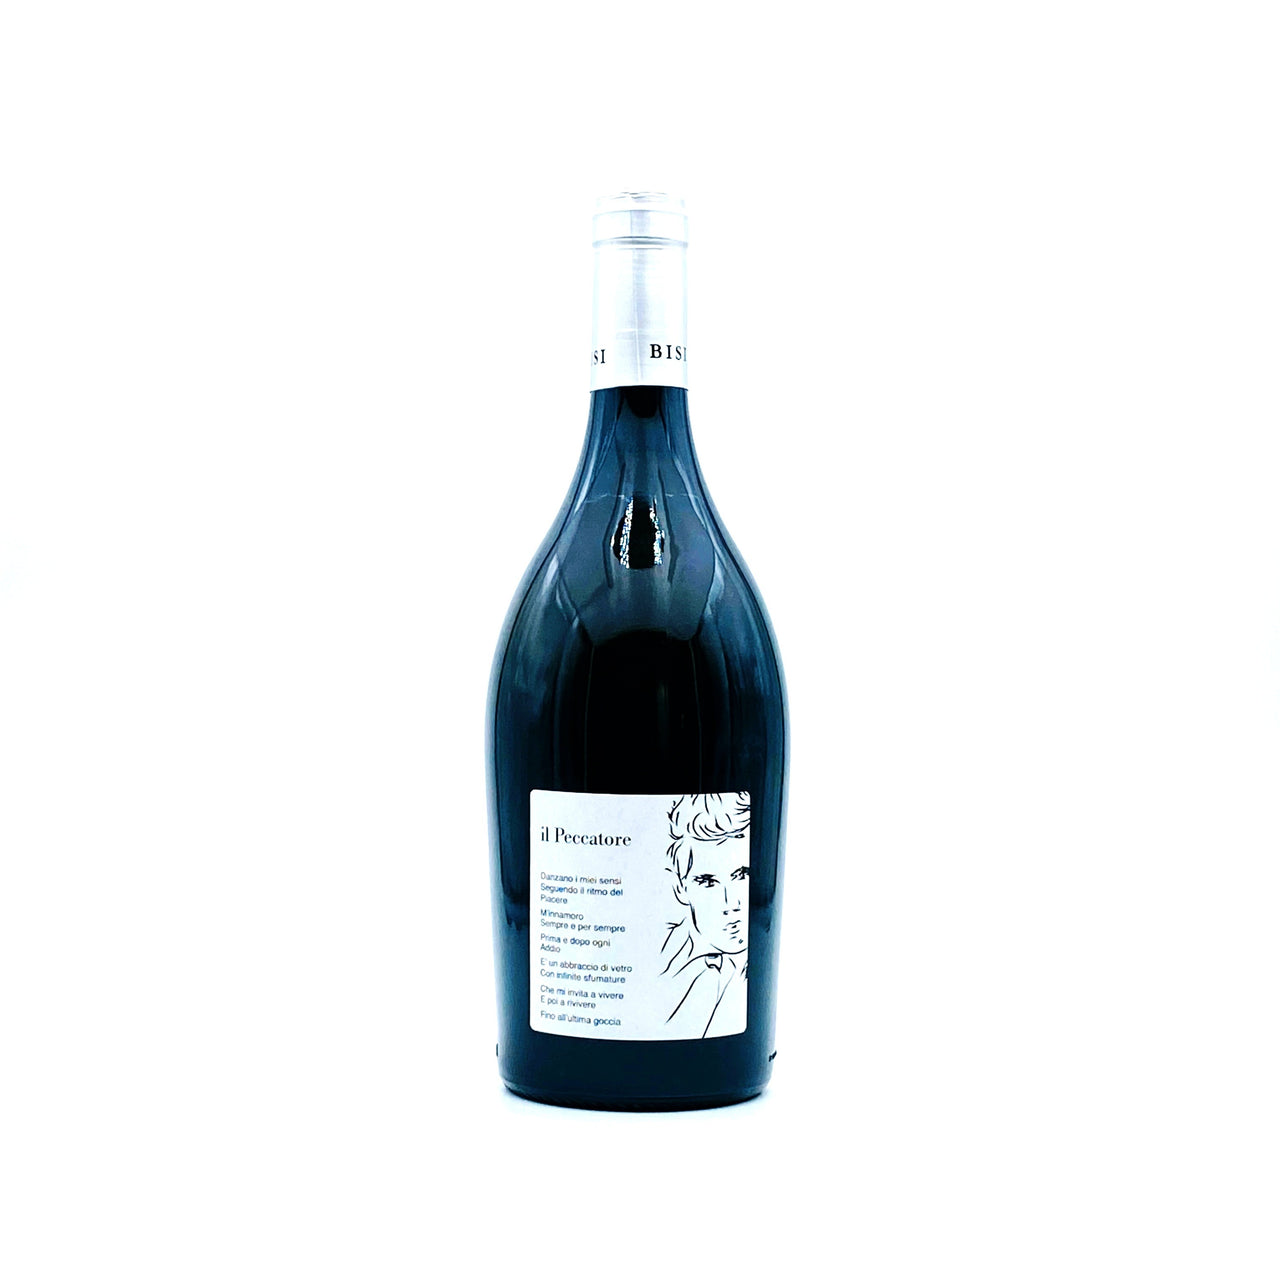 IL PECCATORE - PINOT NERO vinificato in bianco Igt - (frizzante) - Rosato Vini